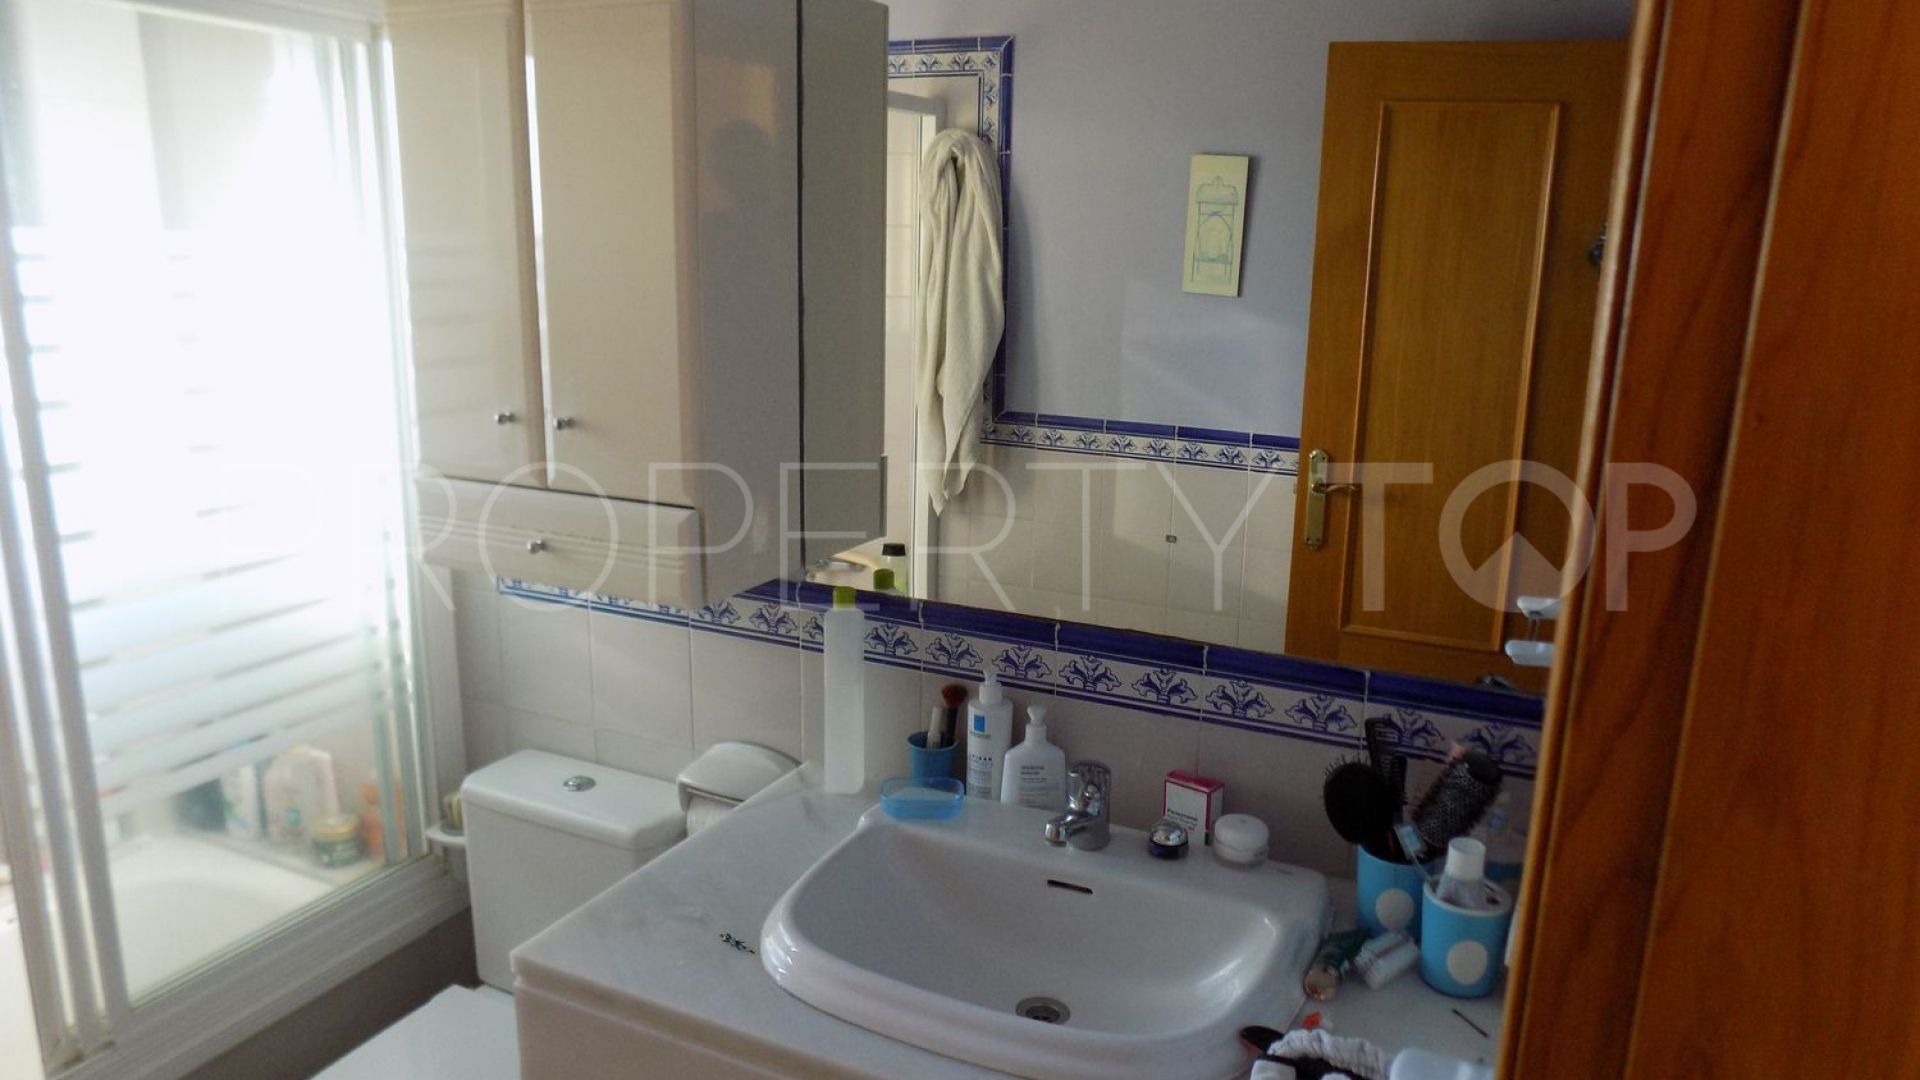 2 bedrooms San Pedro de Alcantara flat for sale